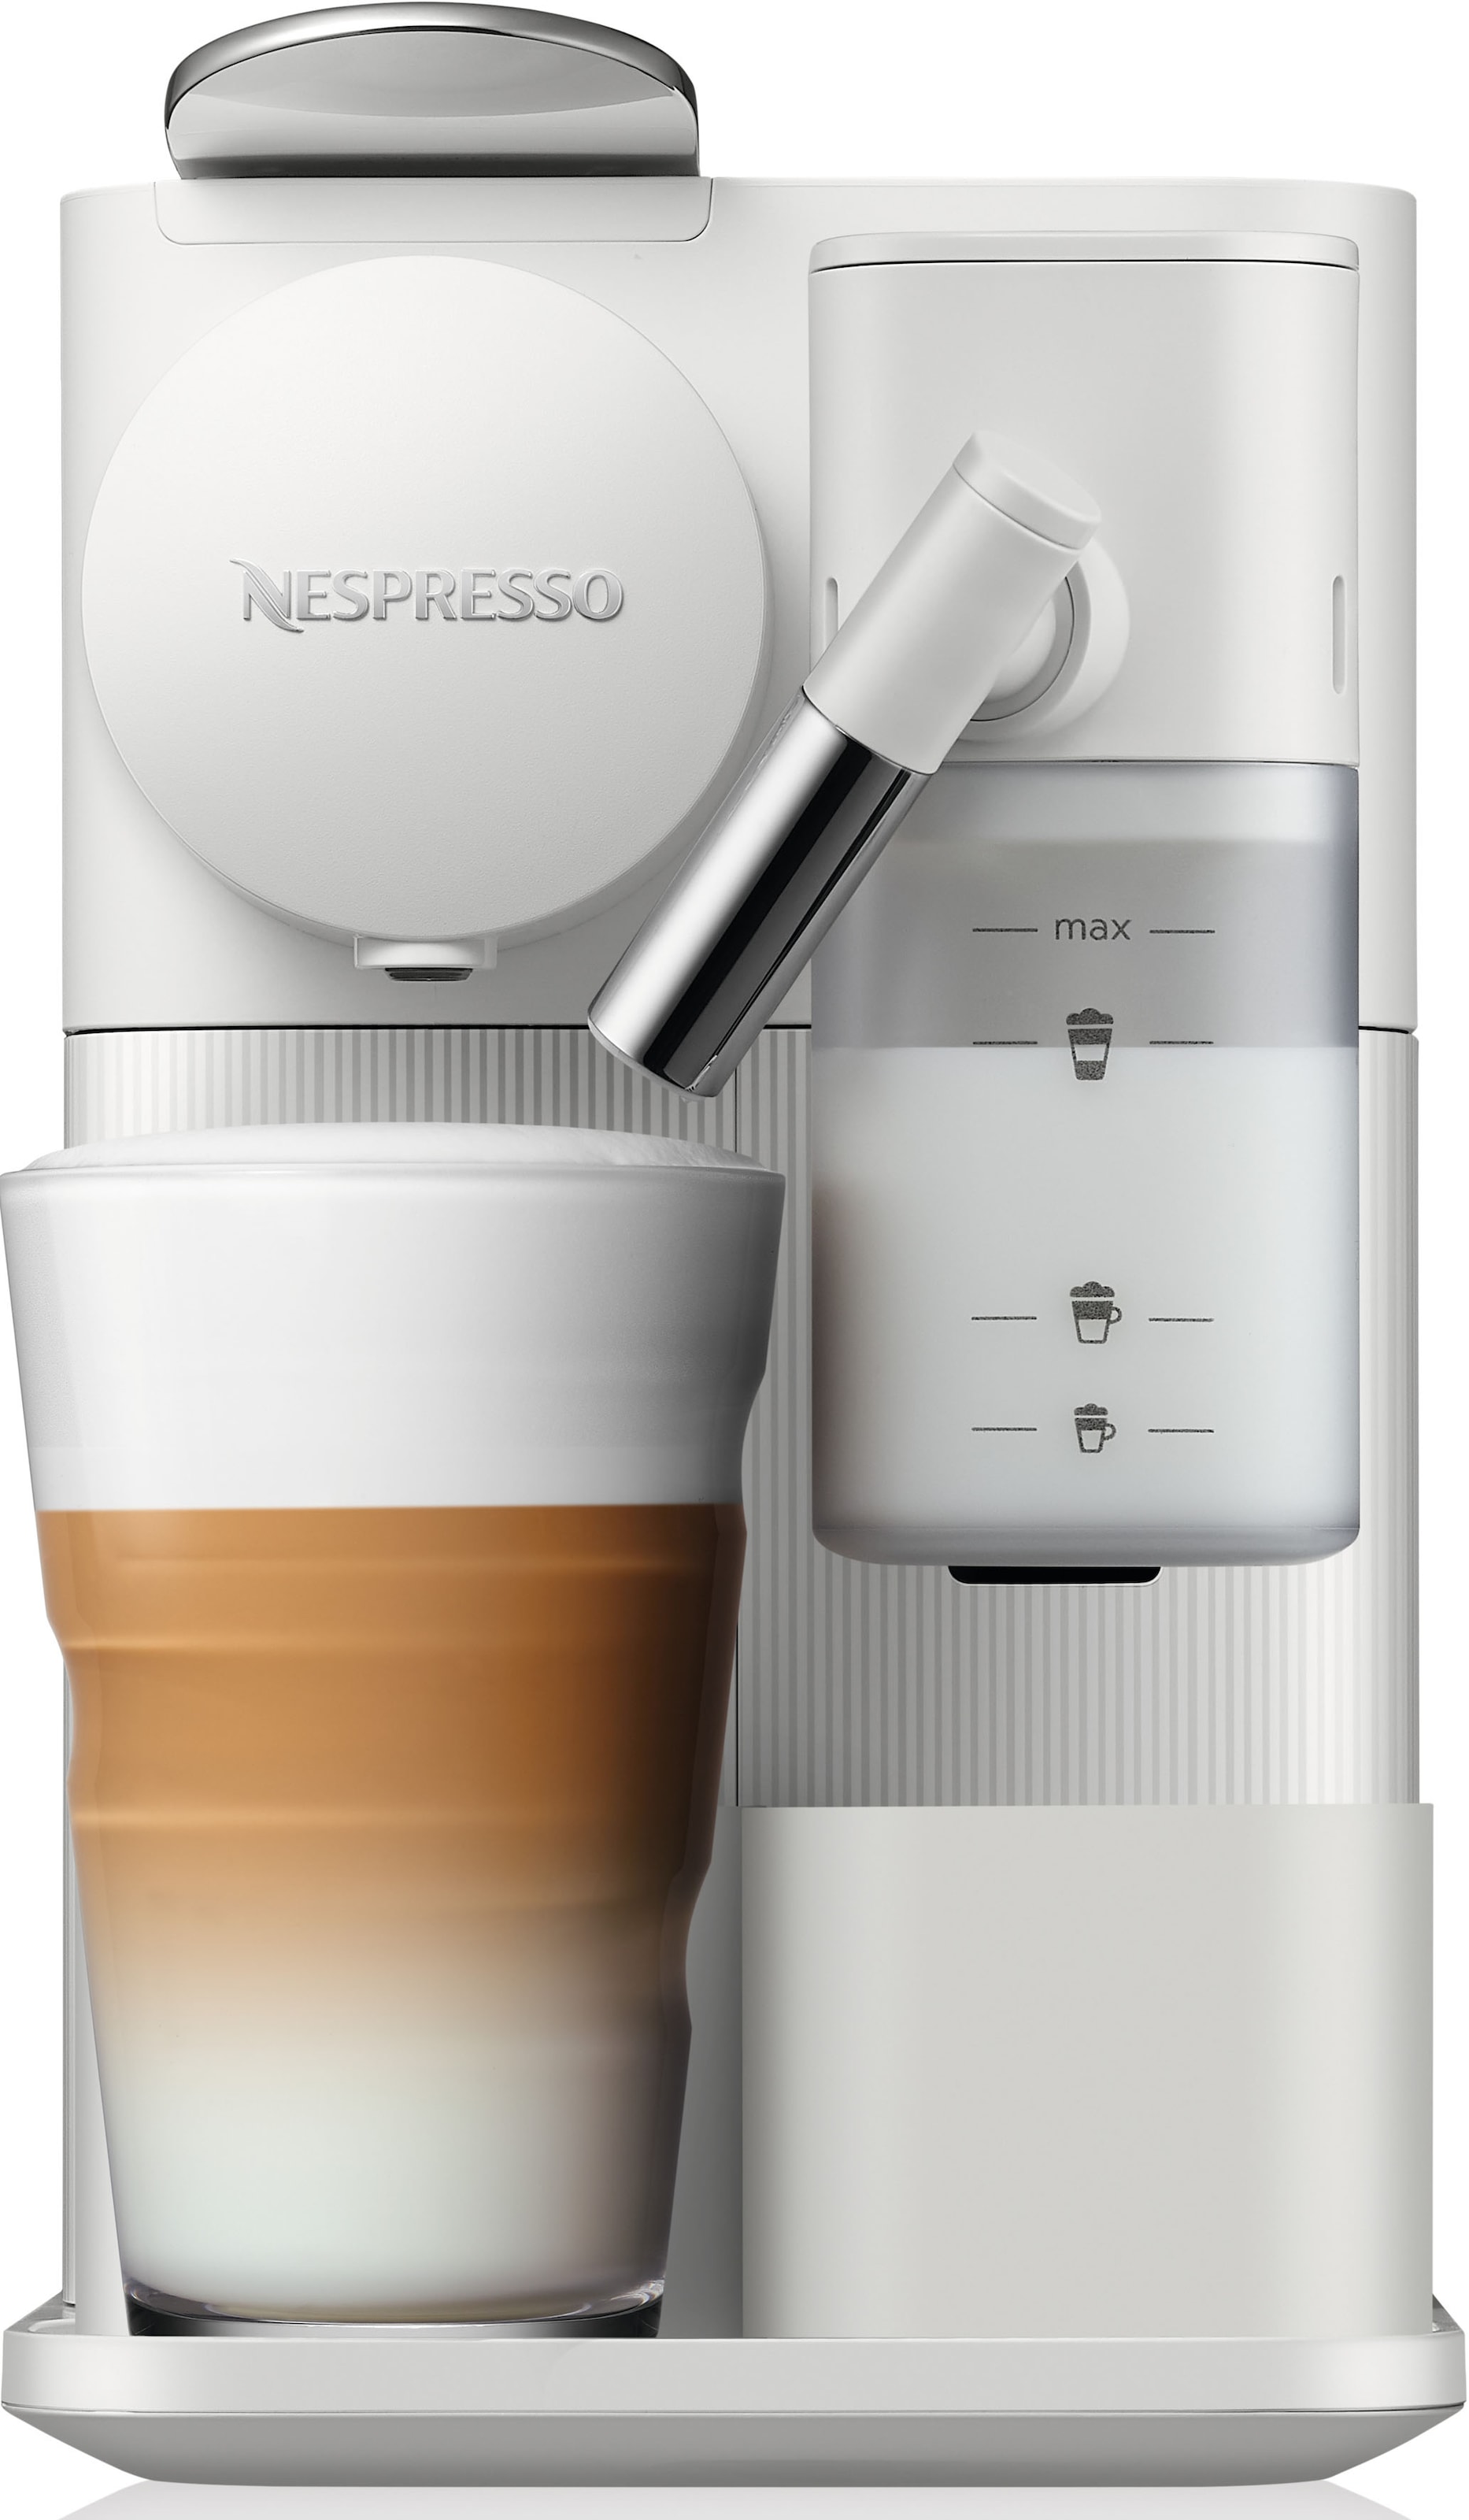 Nespresso Kapselmaschine »Lattissima One mit inkl. EN510.W Garantie XXL von 7 Kapseln DeLonghi, 3 Jahren Willkommenspaket mit White«